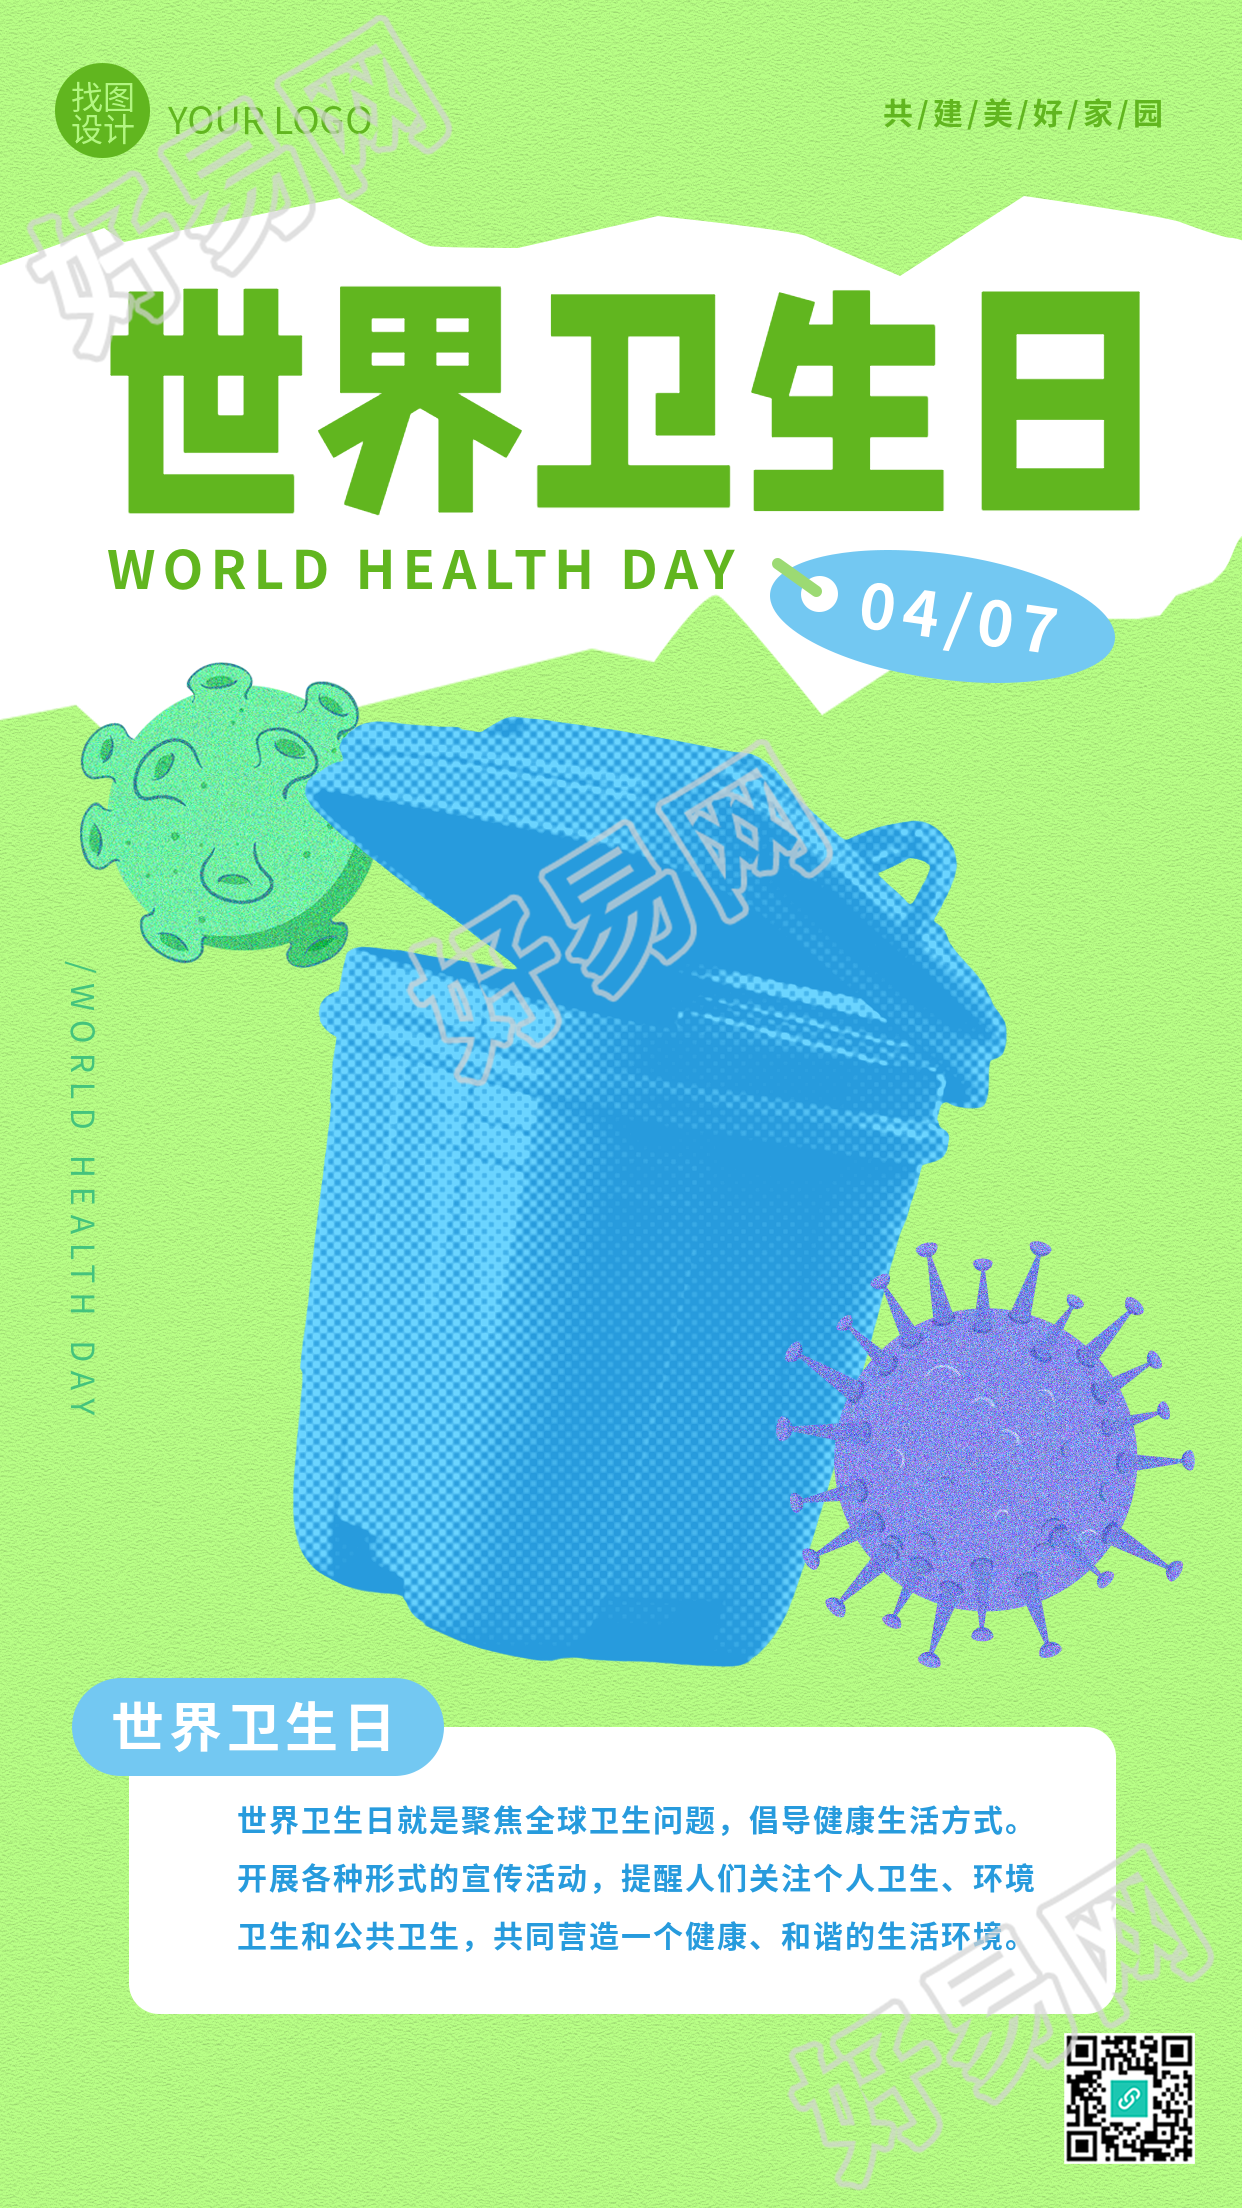 世界卫生日创意宣传手机海报